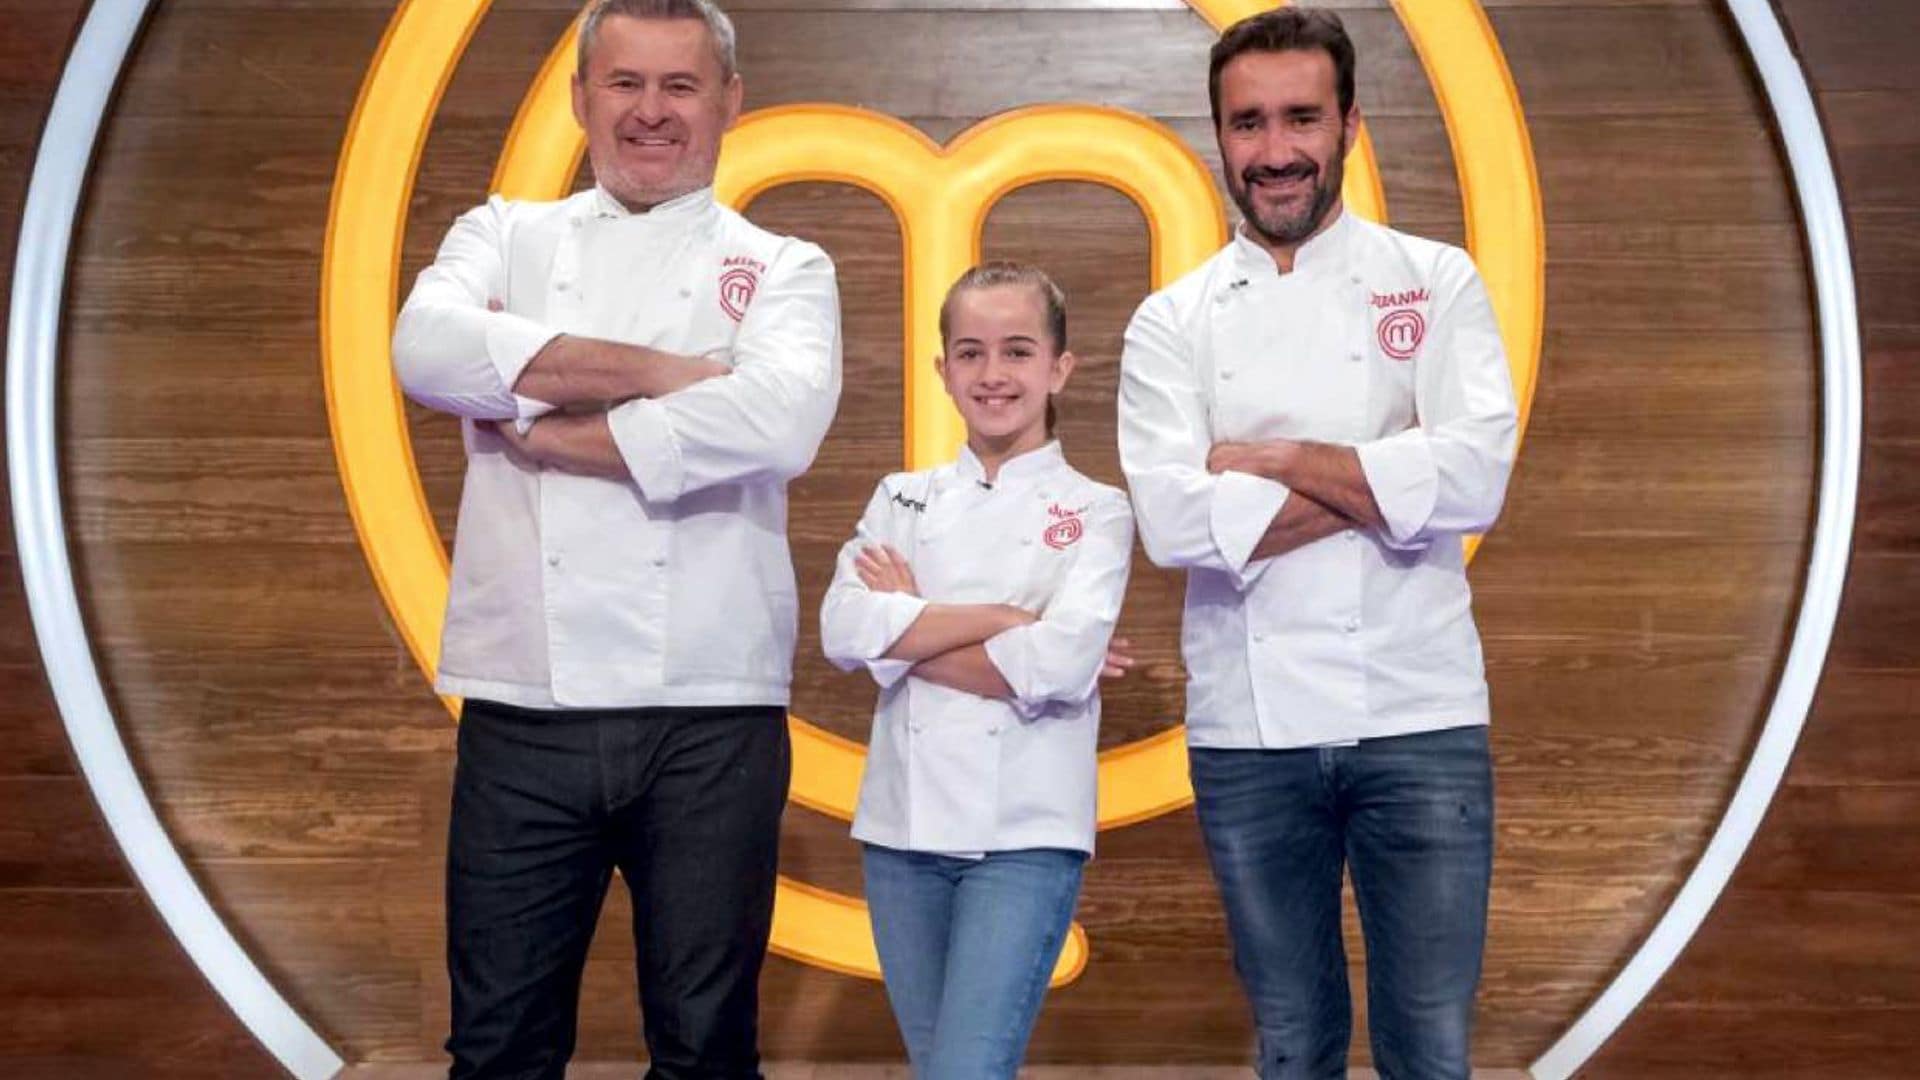 Los divertidos piques entre Juanma Castaño y Miki Nadal vuelven a las cocinas de 'Masterchef'